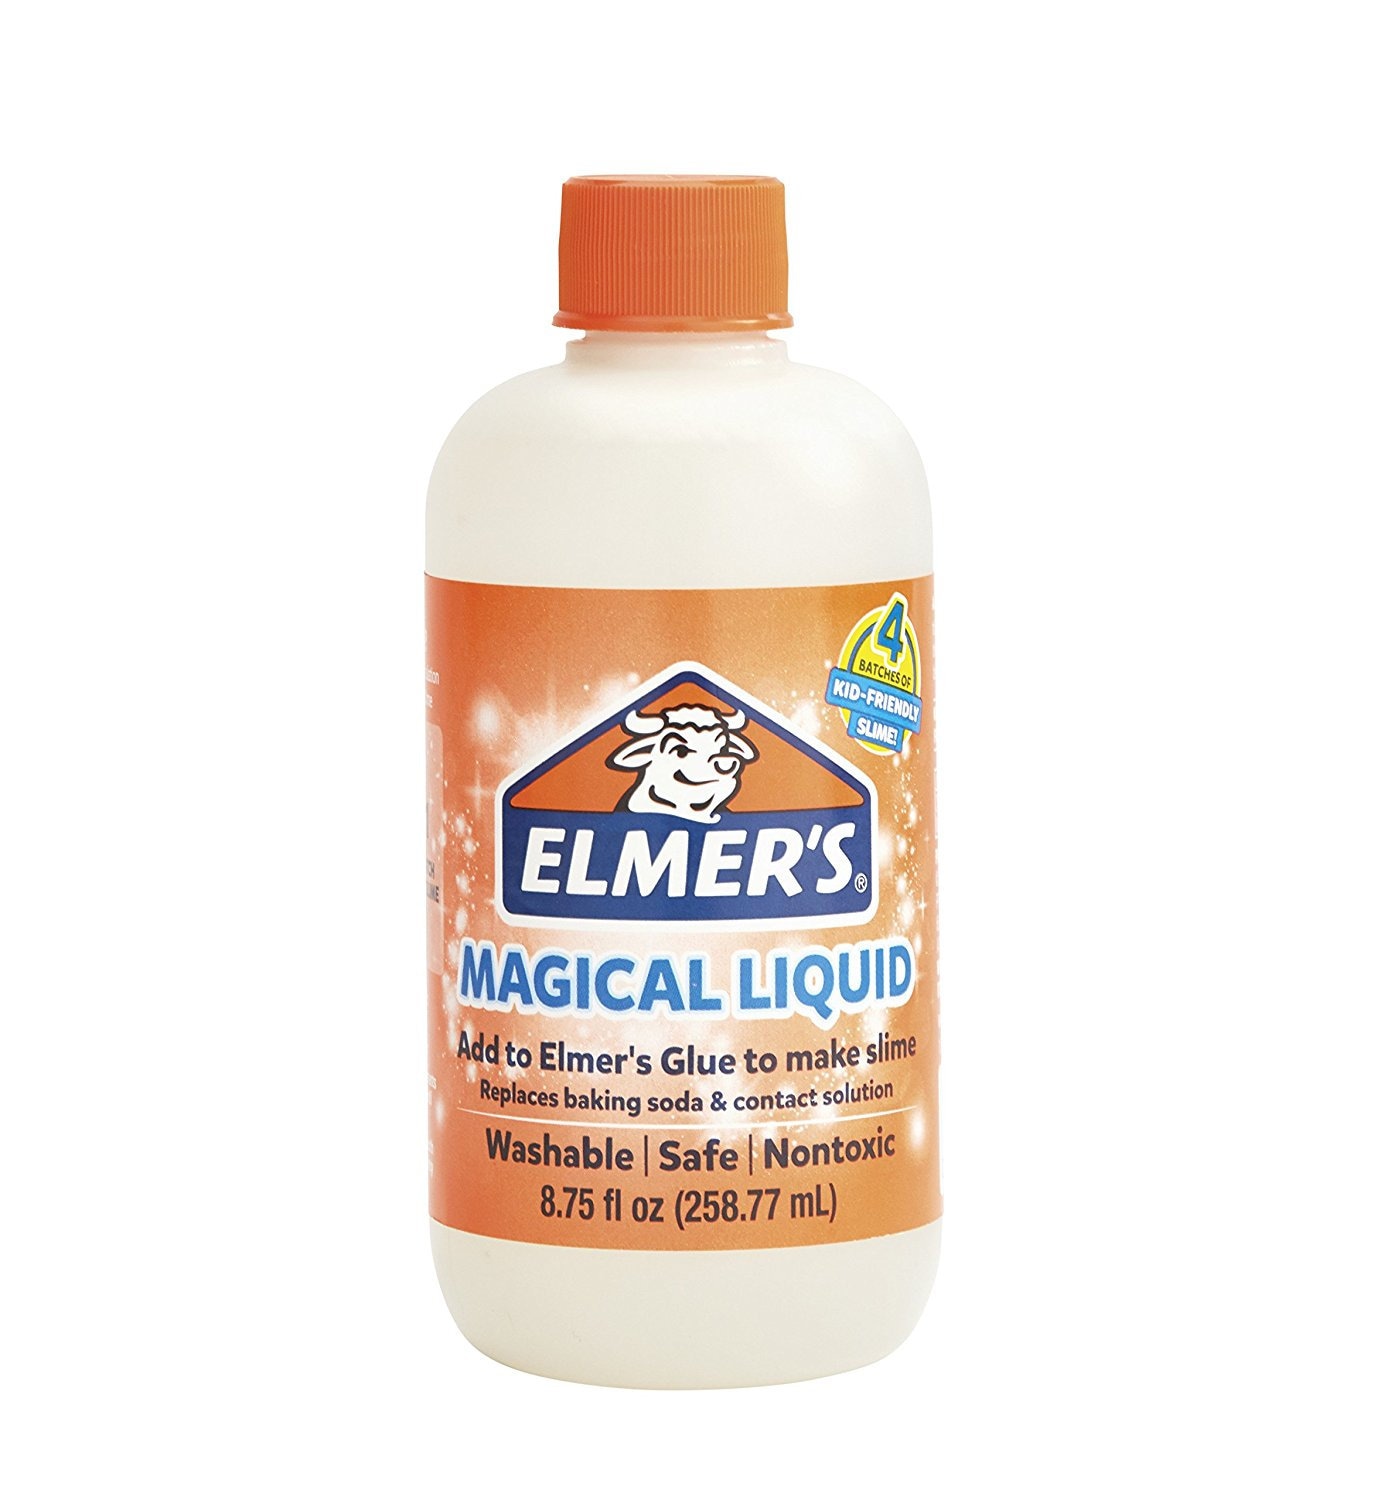 Elmers Glue Slime Magical Liquid Activator Solution 8.75 Fl. Oz. Bottle  Homemade Slime, Paper Crafts, Art Work, School, Kids Crafts -  Israel